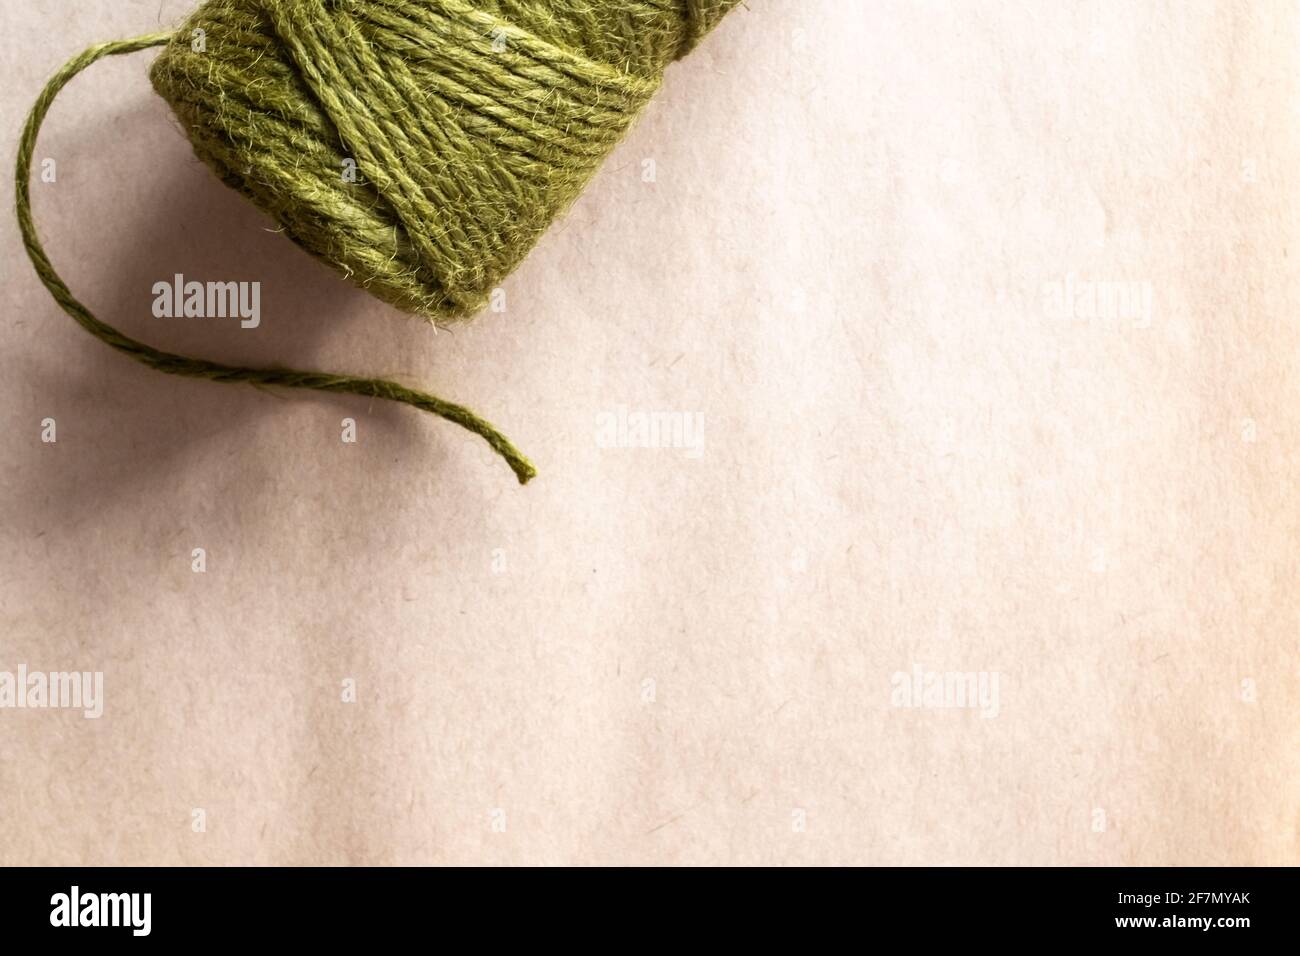 Ein Zylinder aus olivgrünem Garn mit einem einzelnen Strang, der bei natürlichem Licht auf einem Pergamentpapierhintergrund locker hängt, Ontario, Kanada, 2021. Speicherplatz kopieren. Stockfoto